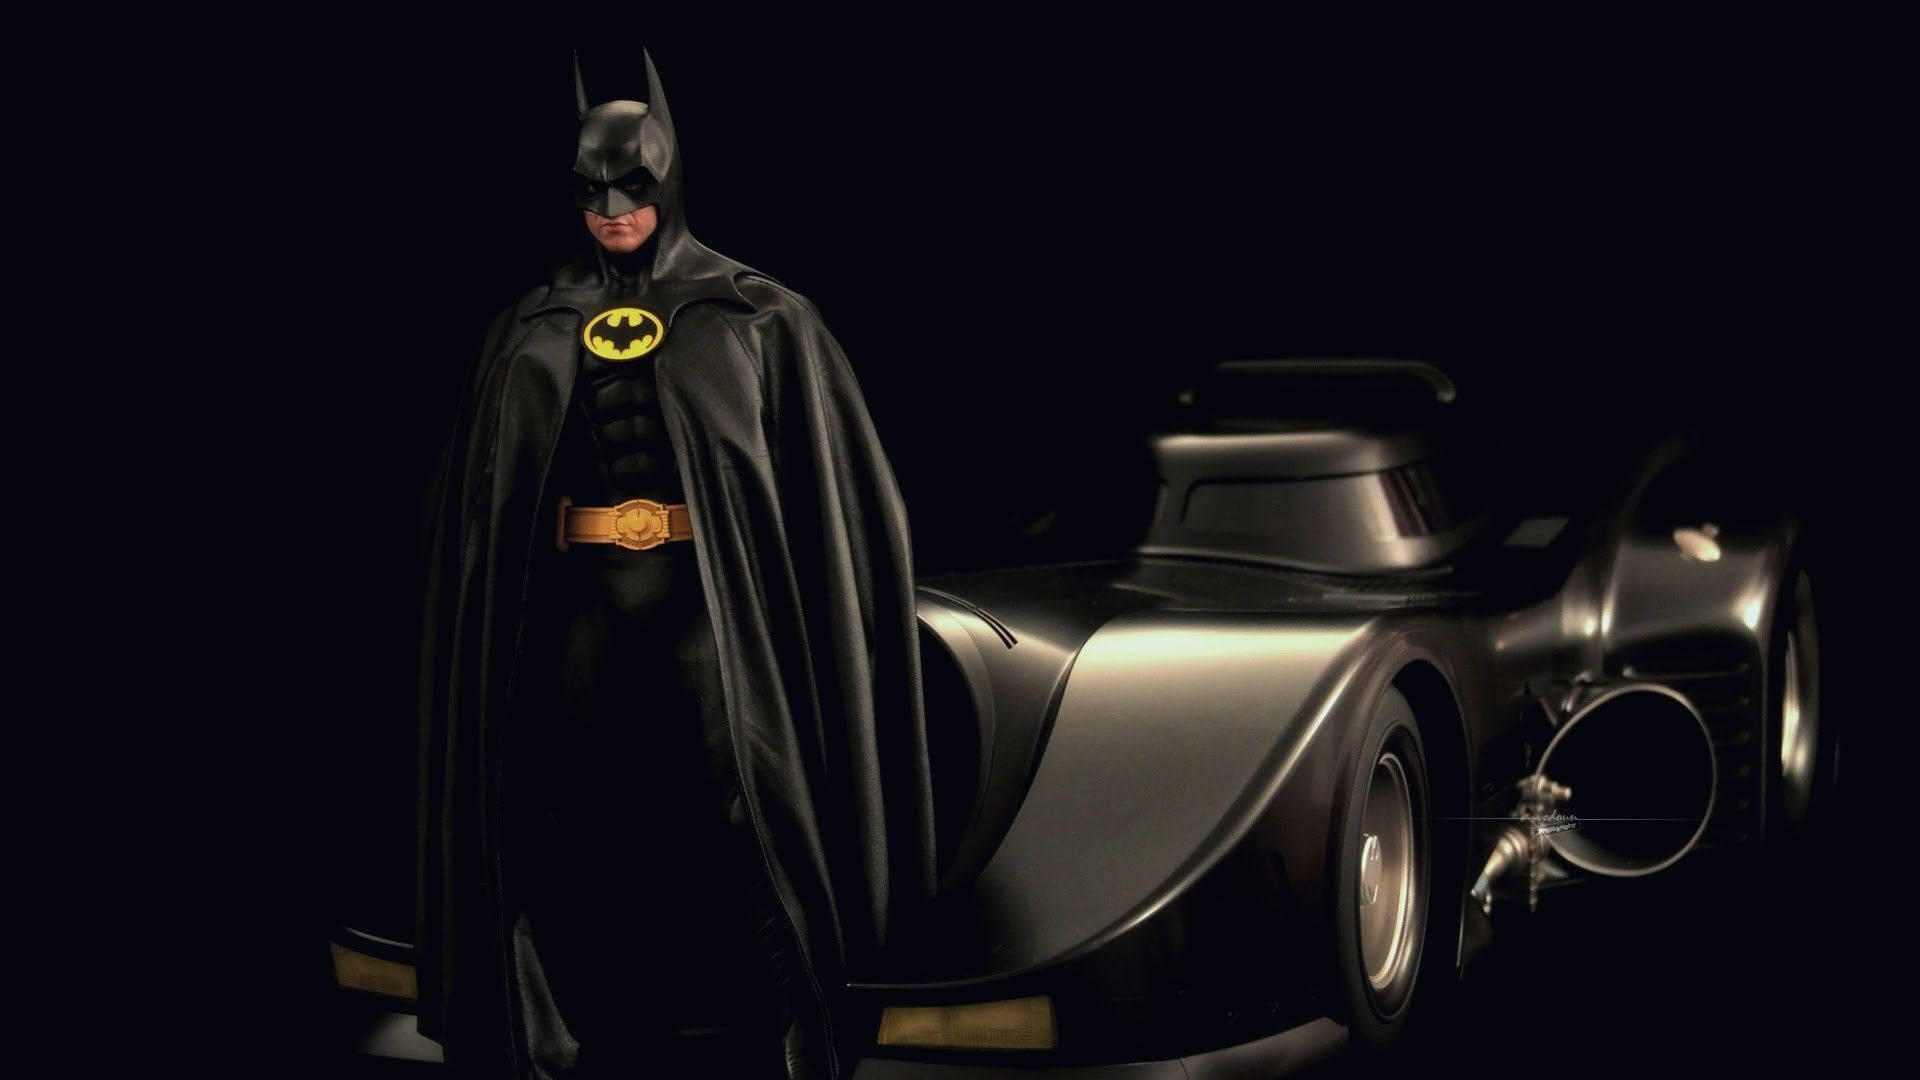 Batman And Batmobile In Darkness